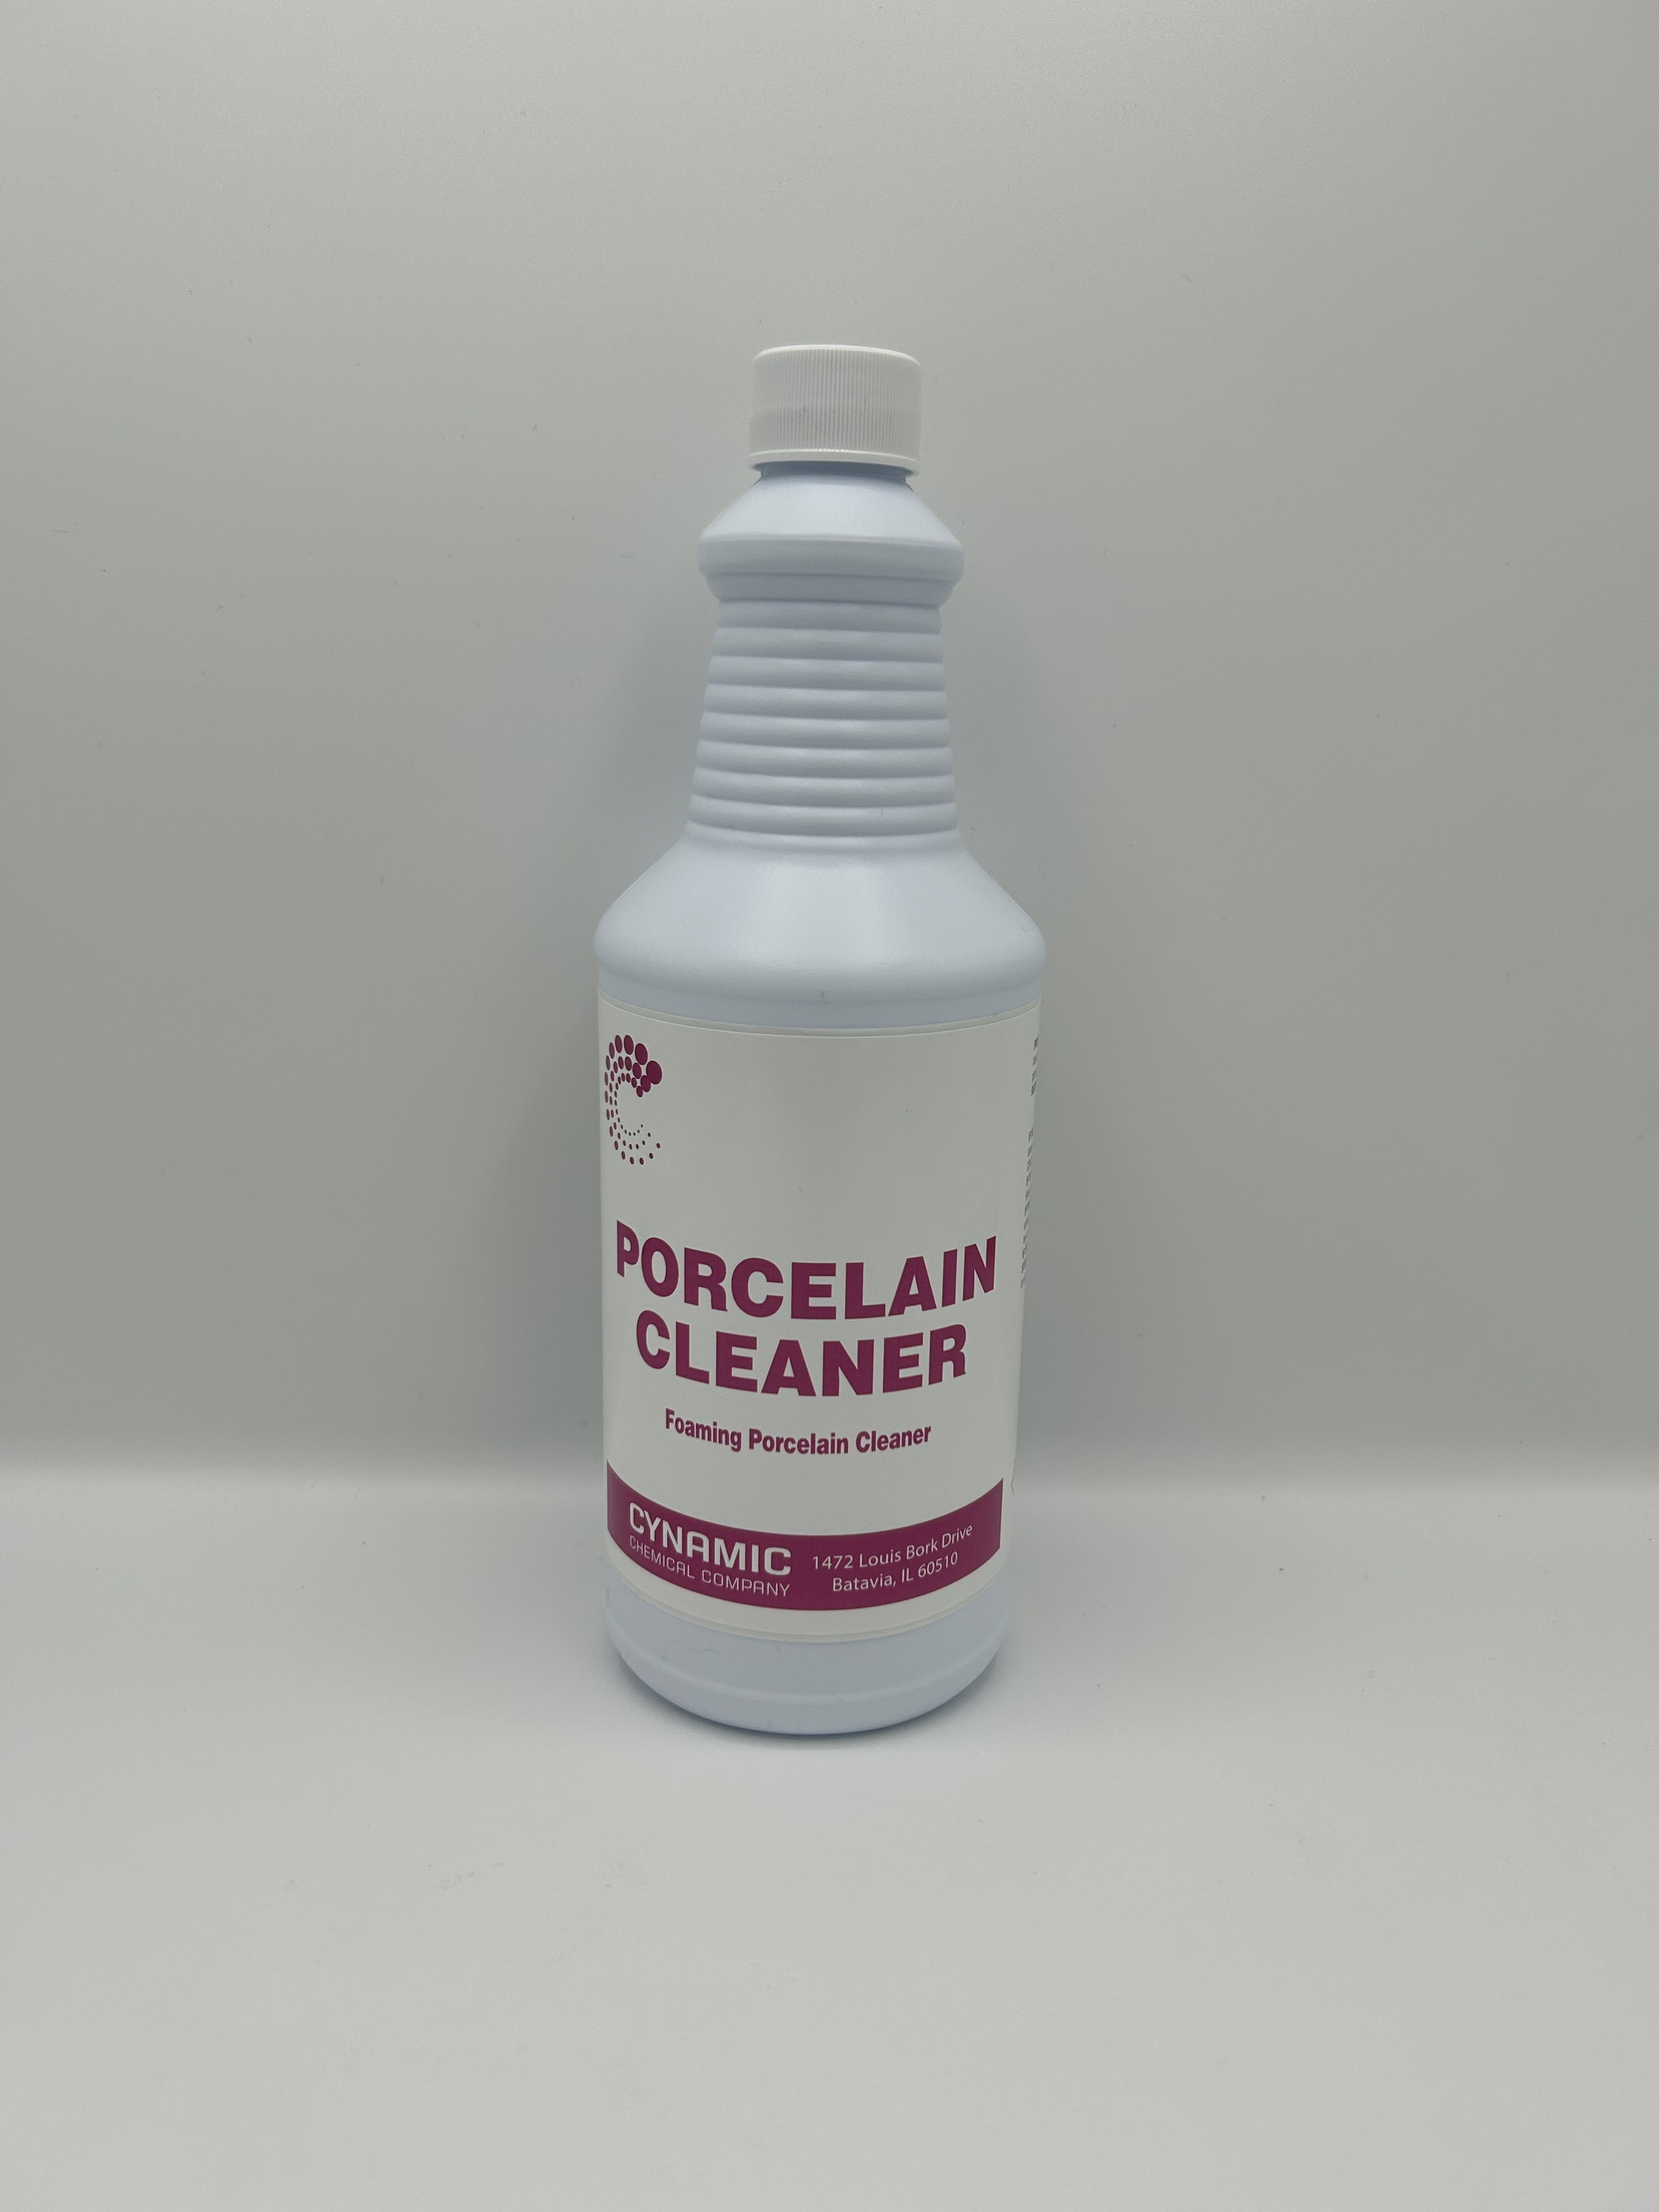 PORCELAIN CLEANER FOAMING PORCELAIN CLNR (12/QT)